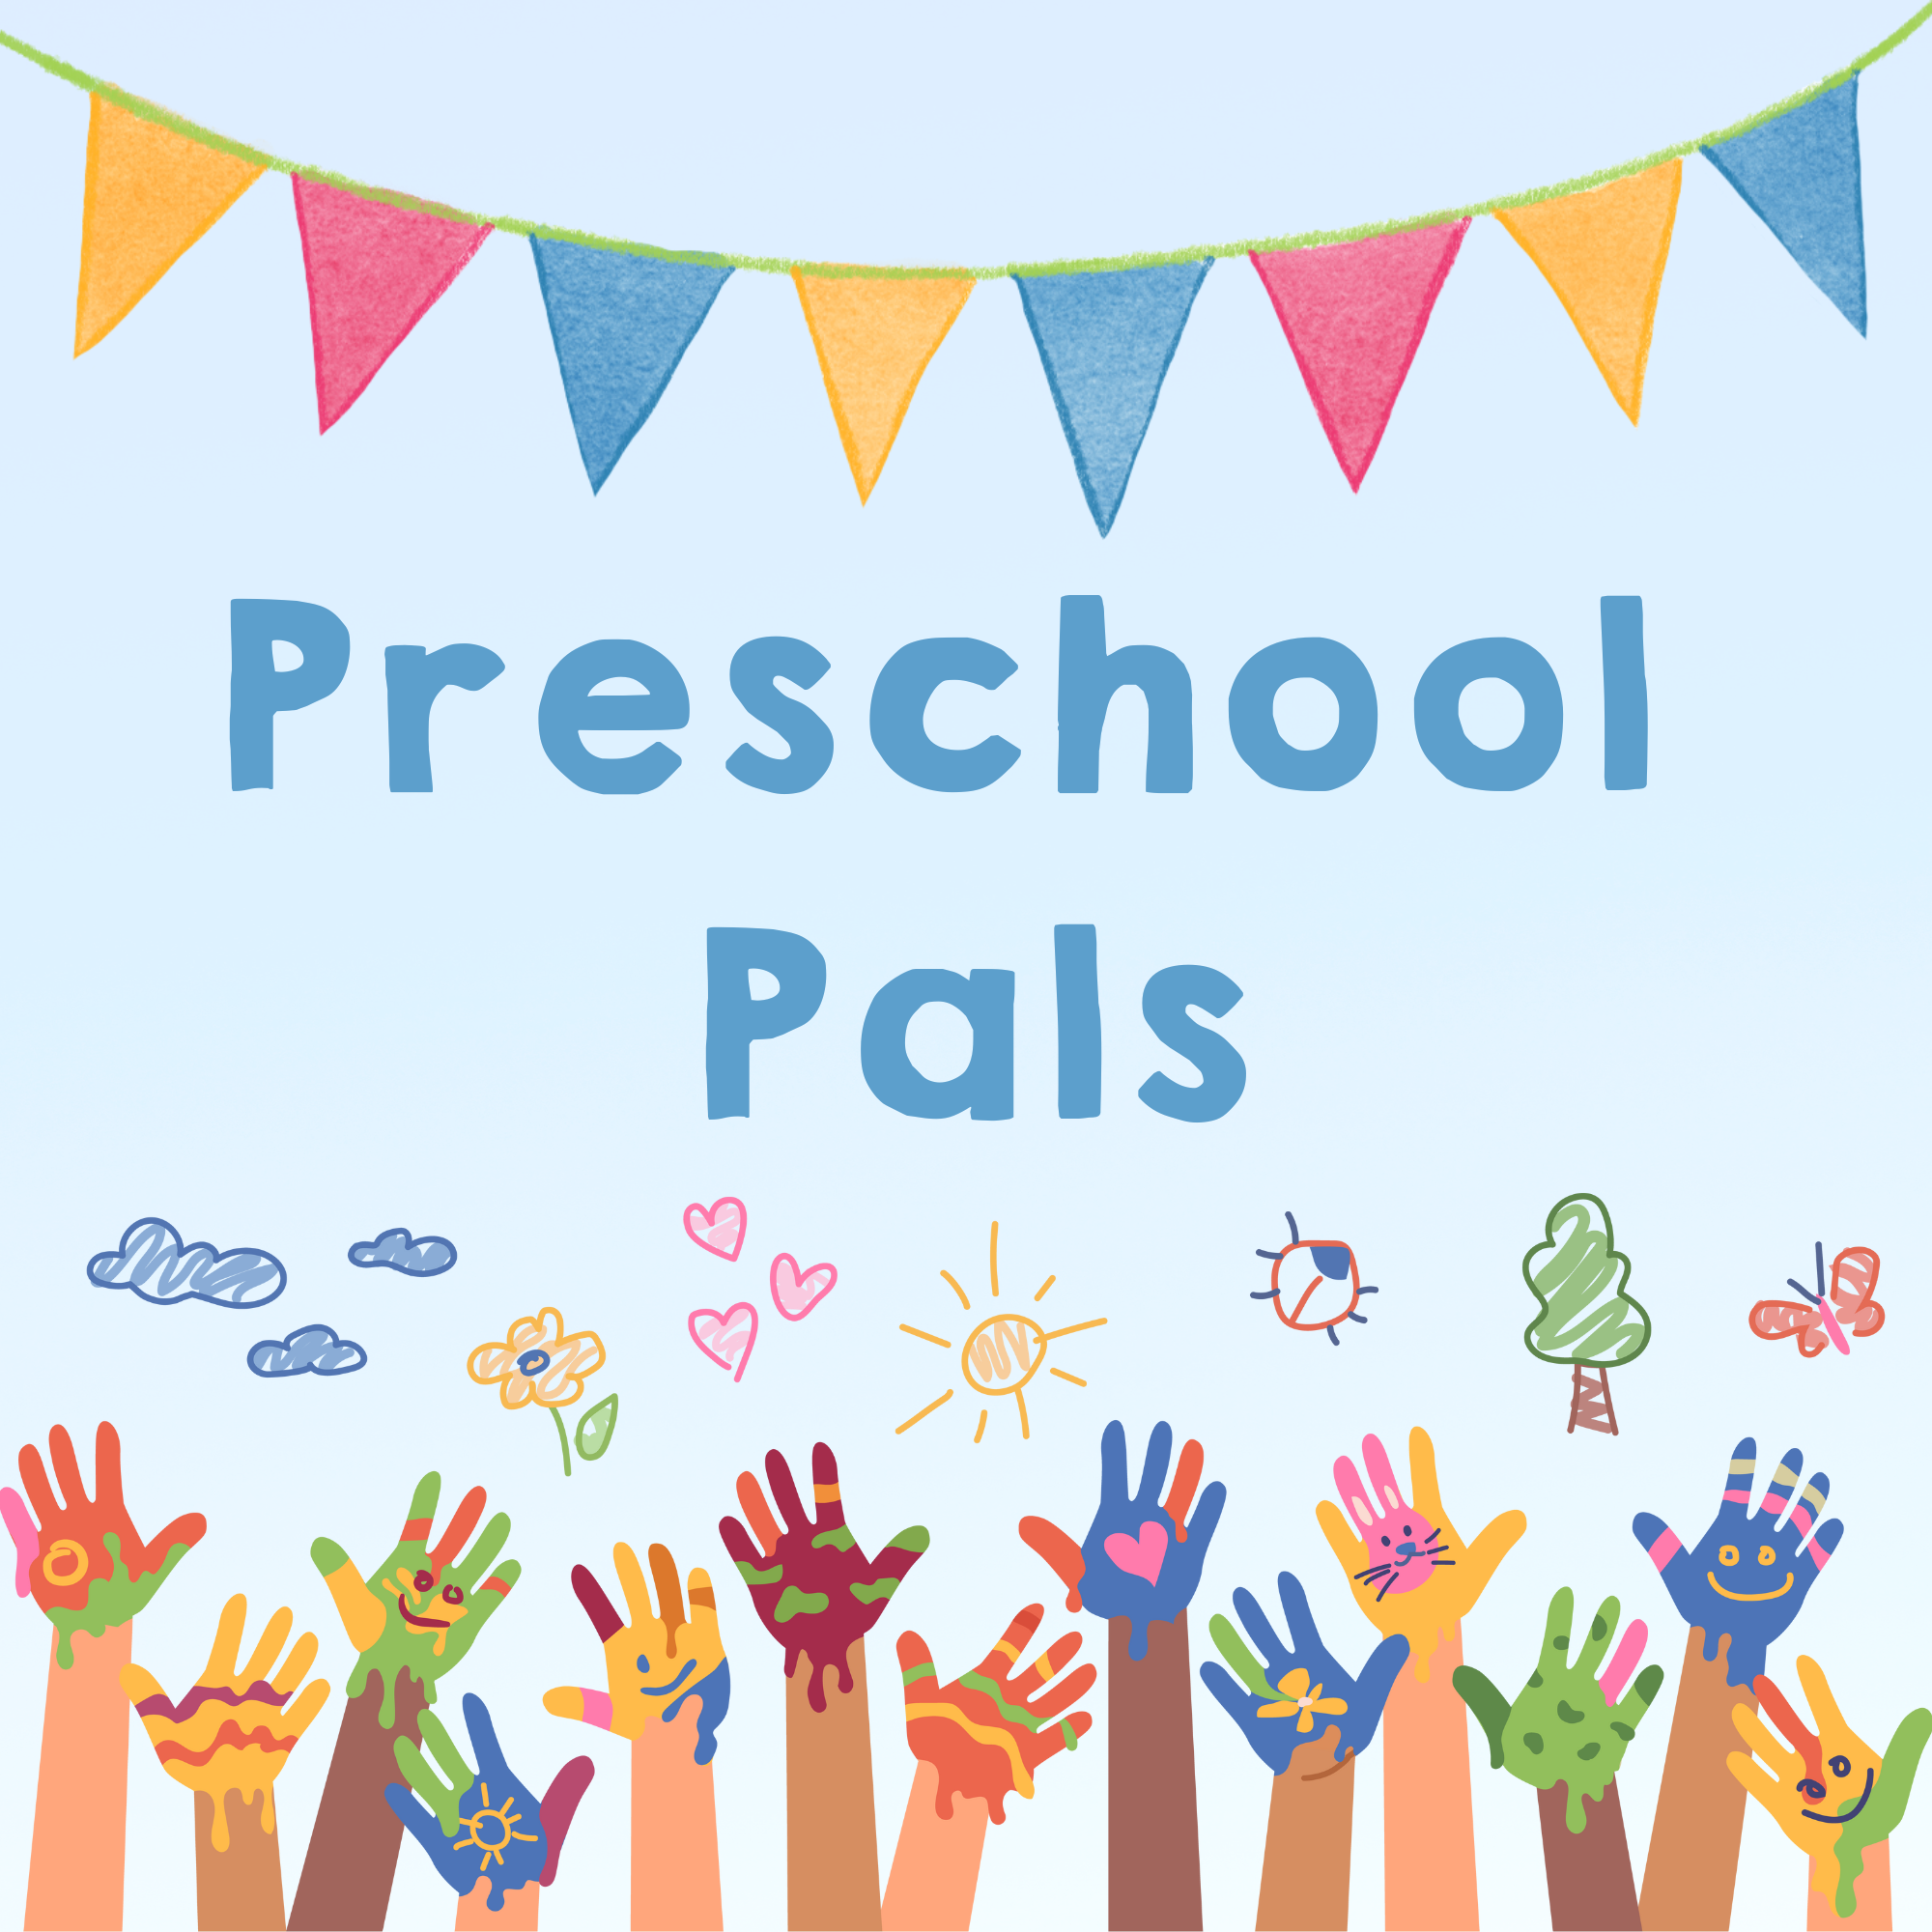 Preschool Pals logo